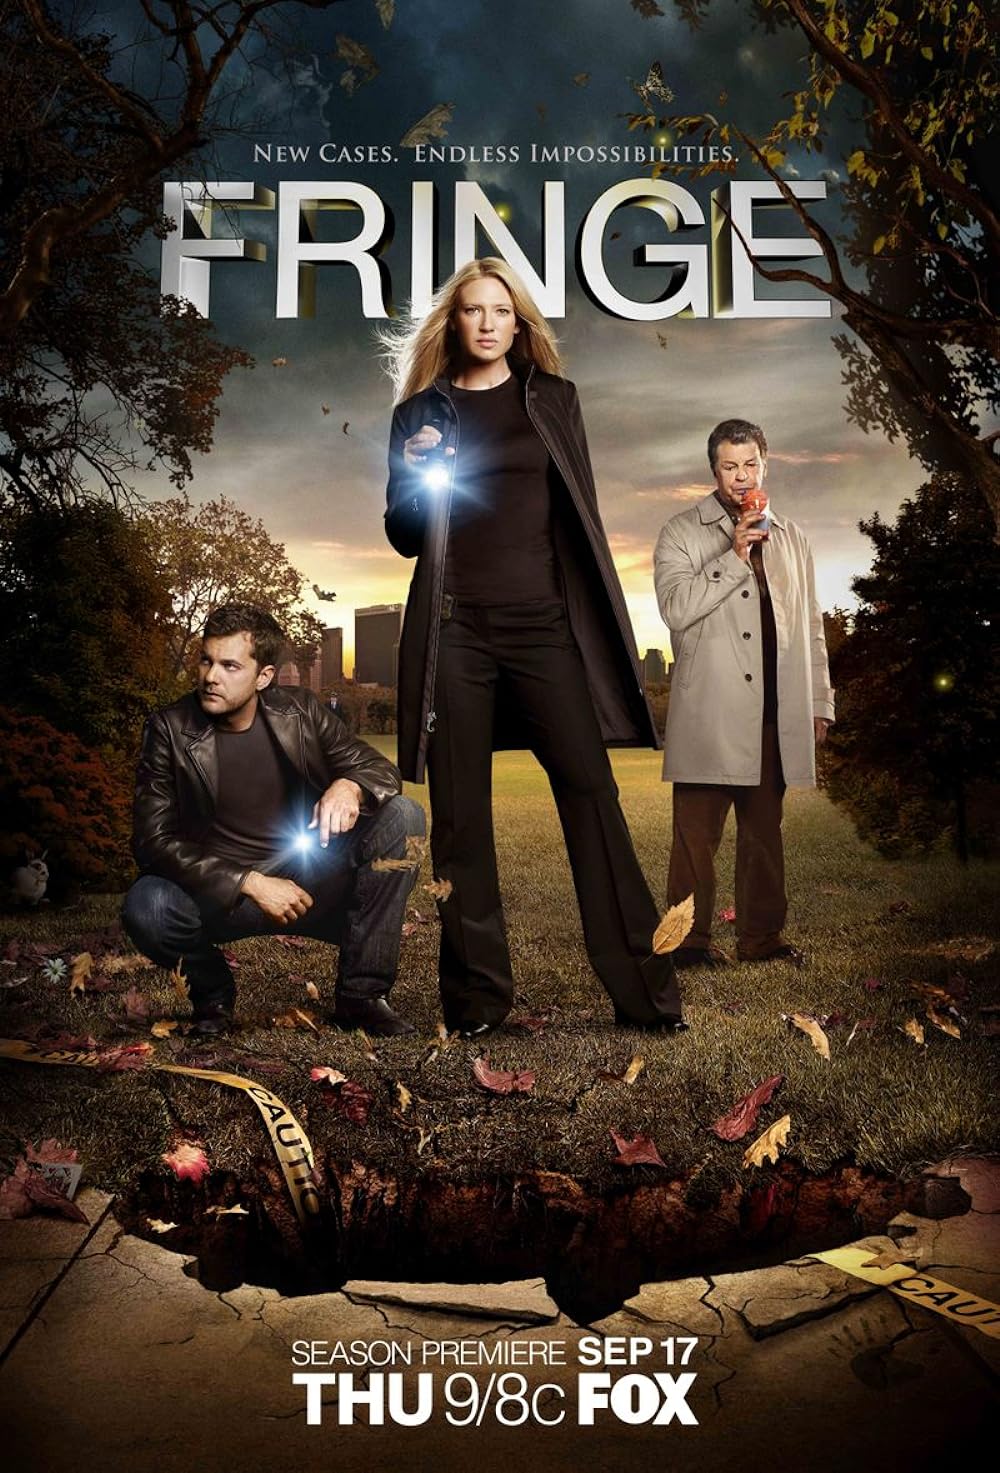 Fringe (2012) S5 EP01&EP13 192Kbps 23.976Fps 48Khz 2.0Ch DigitalTV Turkish Audio TAC